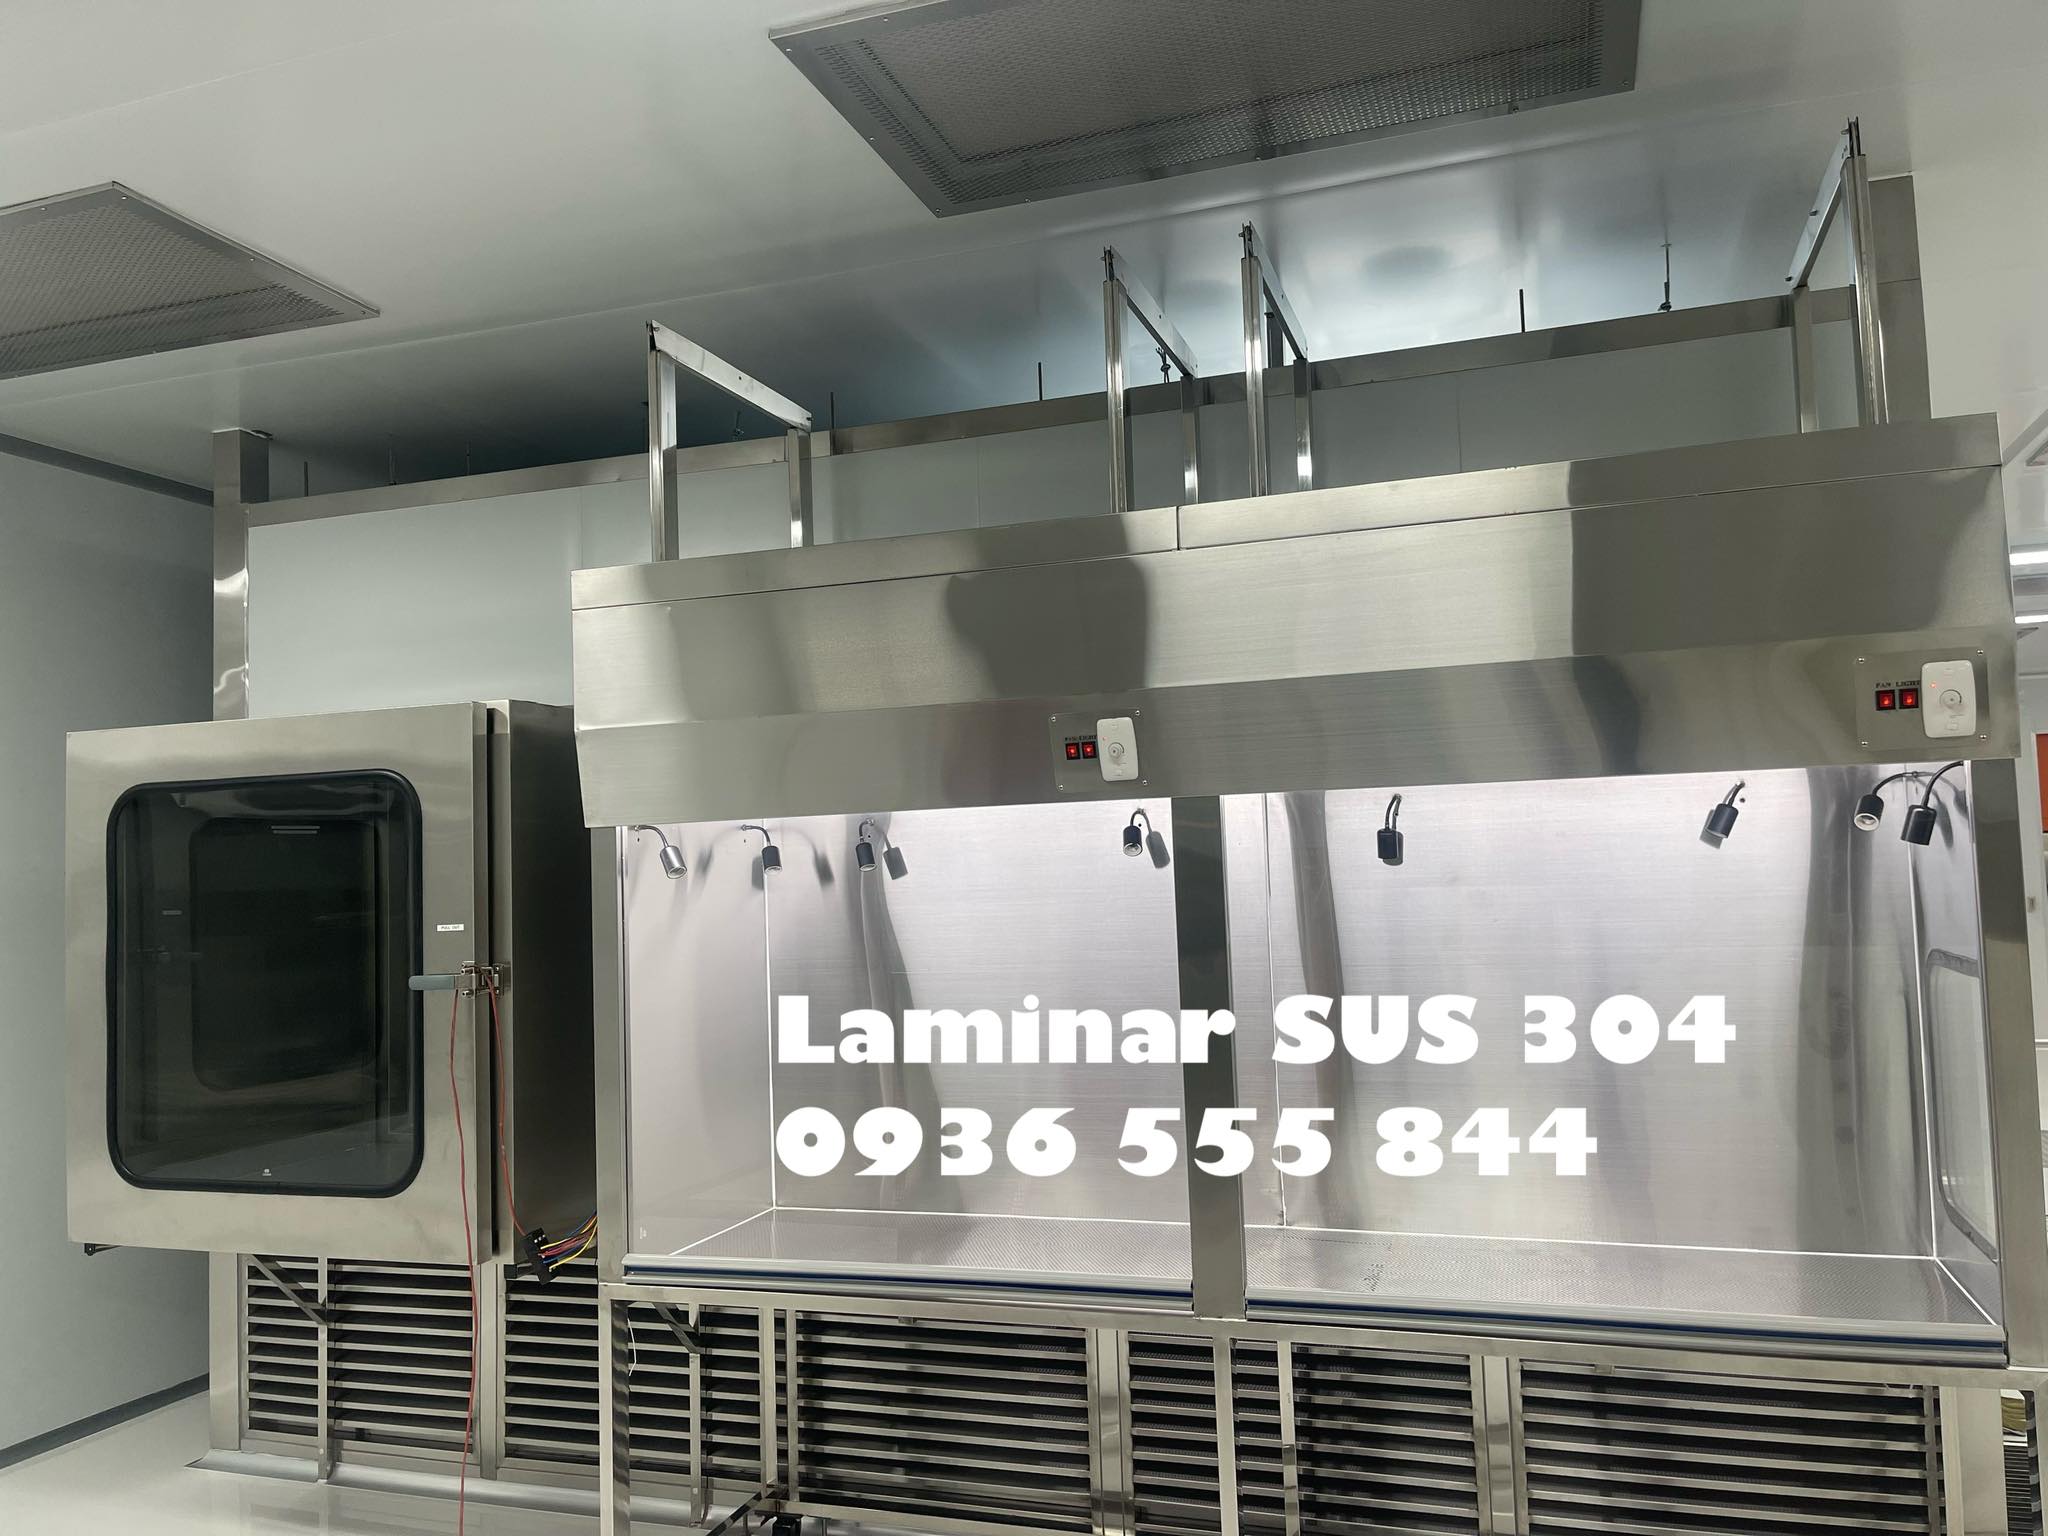 Chuyên sản xuất laminar air flow cấp phòng sạch